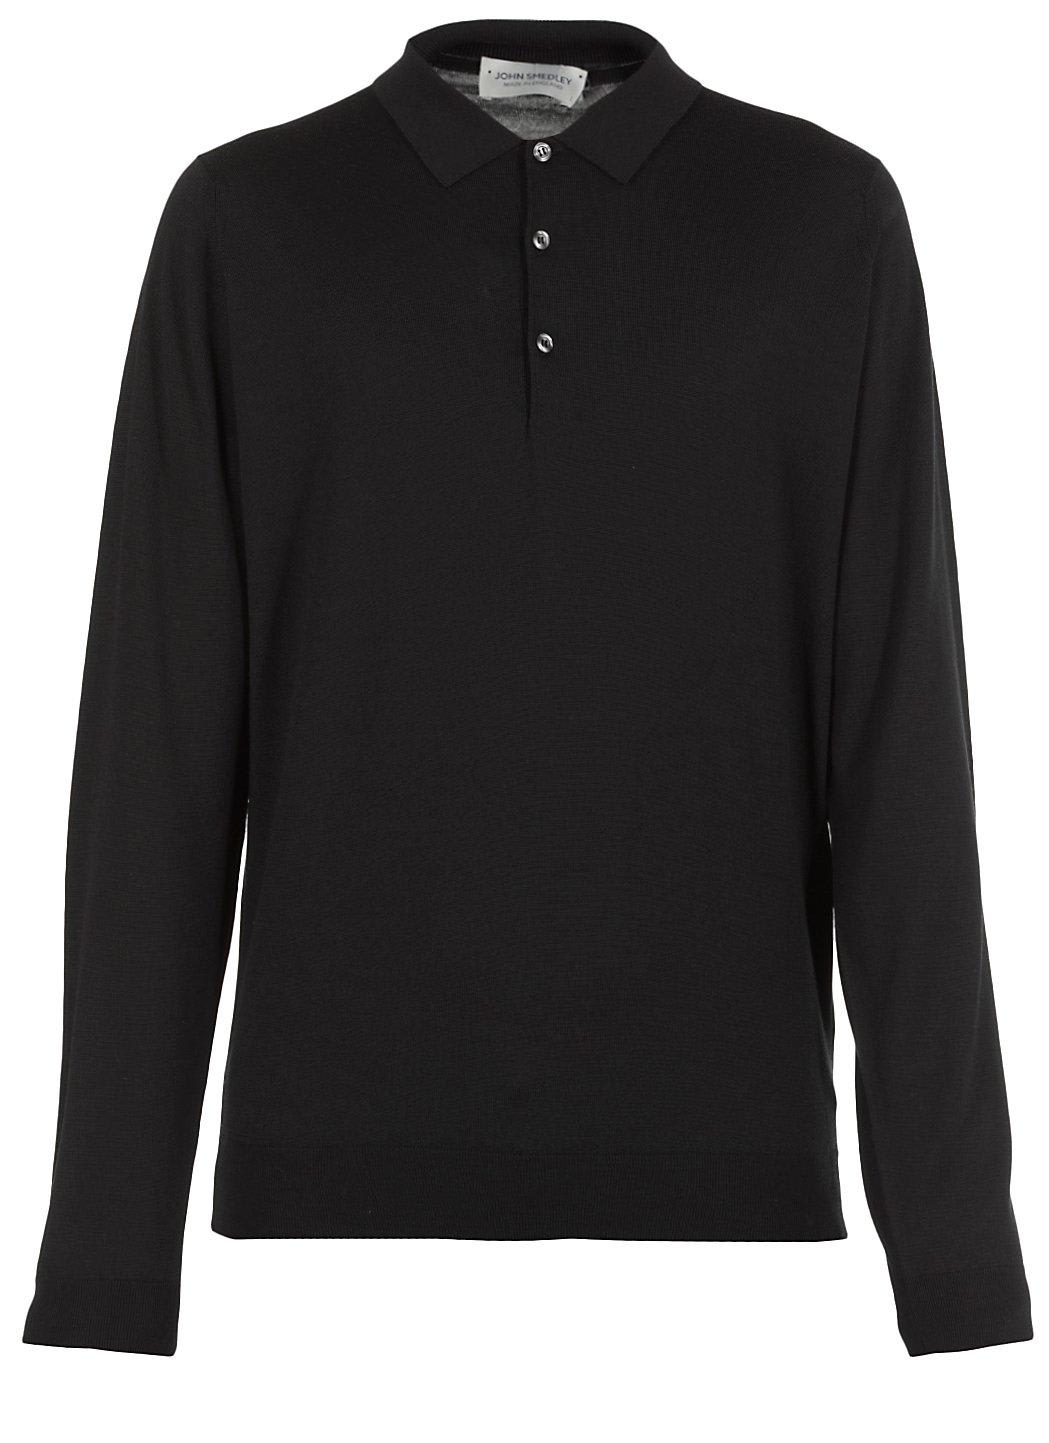 John Smedley Belper Buttoned Knitted Polo Shirt